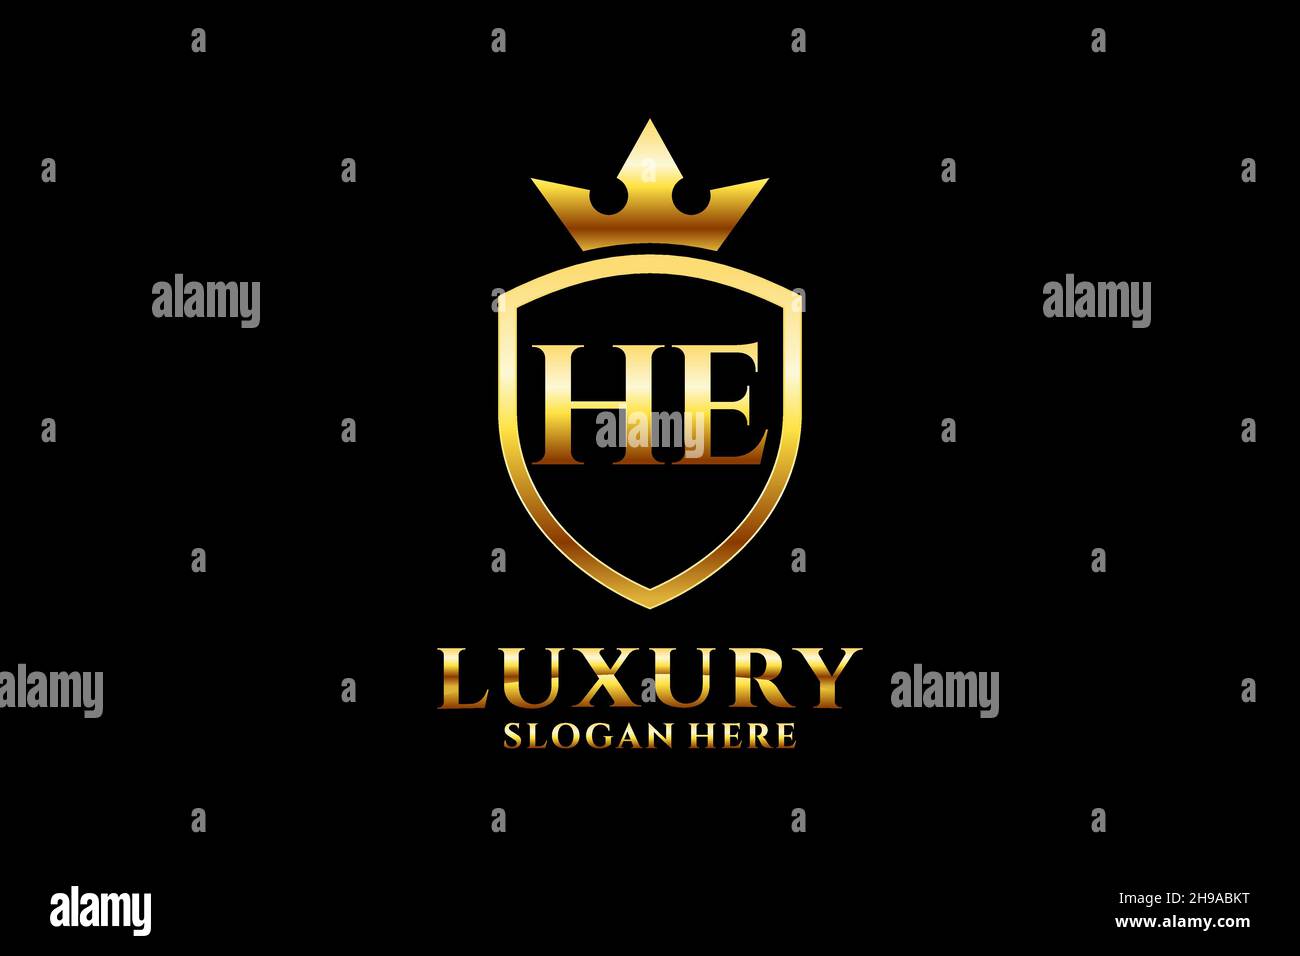 IL est élégant de luxe monogramme logo ou modèle de badge avec des rouleaux et couronne royale - parfait pour les projets de marque de luxe Illustration de Vecteur